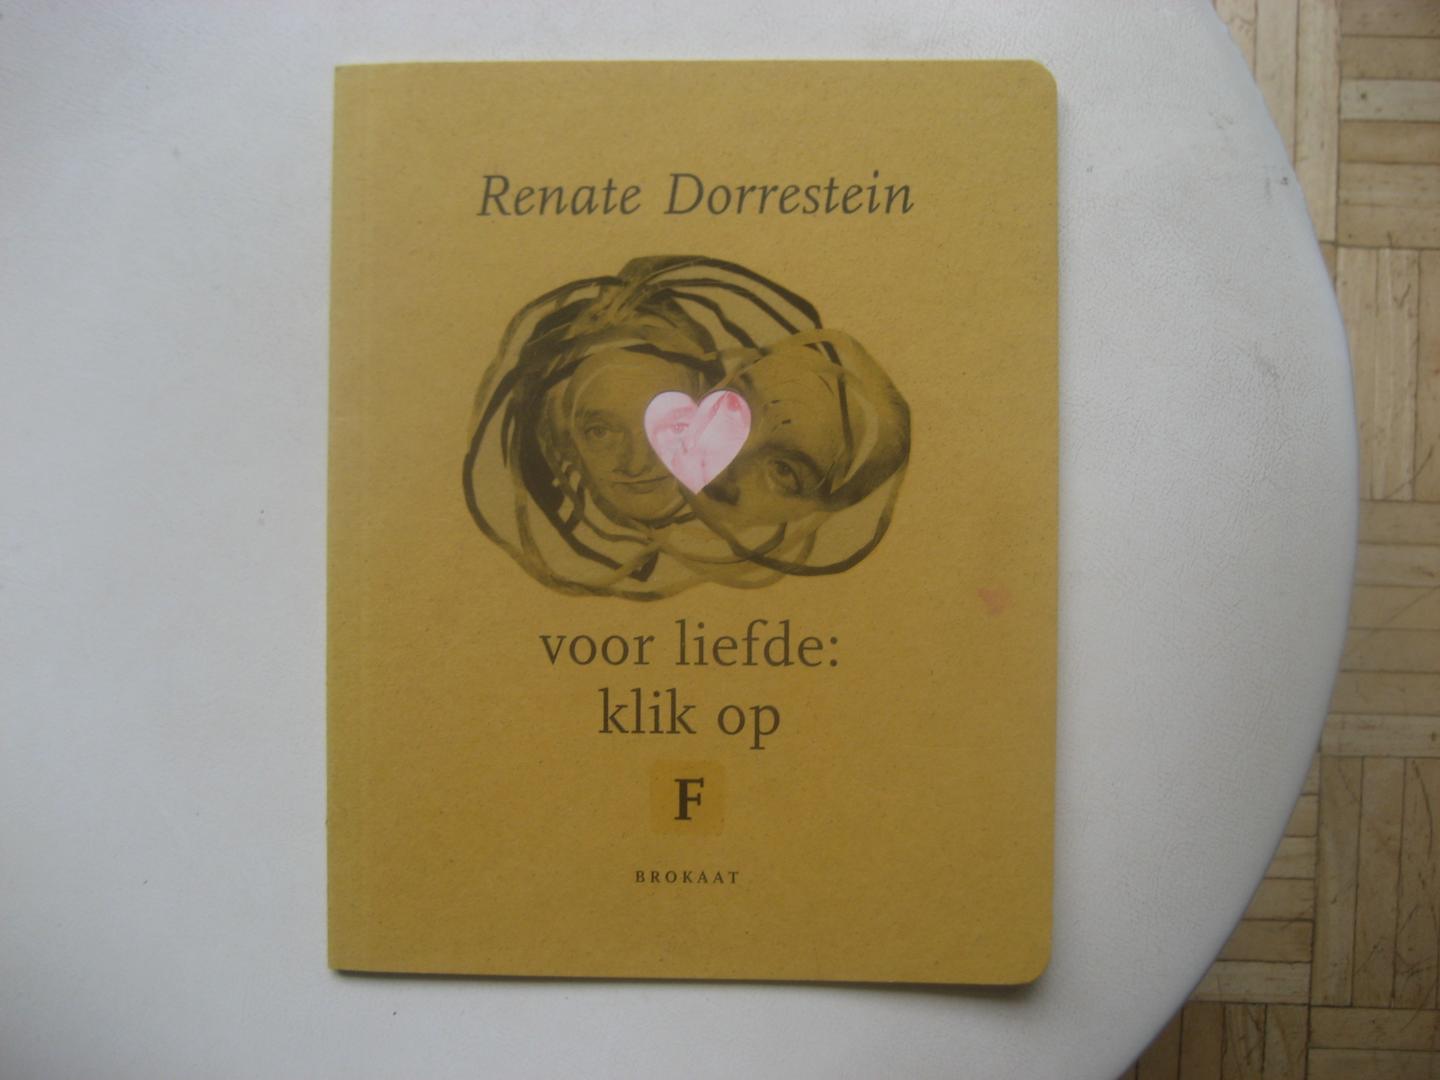 Renate Dorrestein - Voor liefde: klik op F  / Zilverbrokaatreeksnummer 1